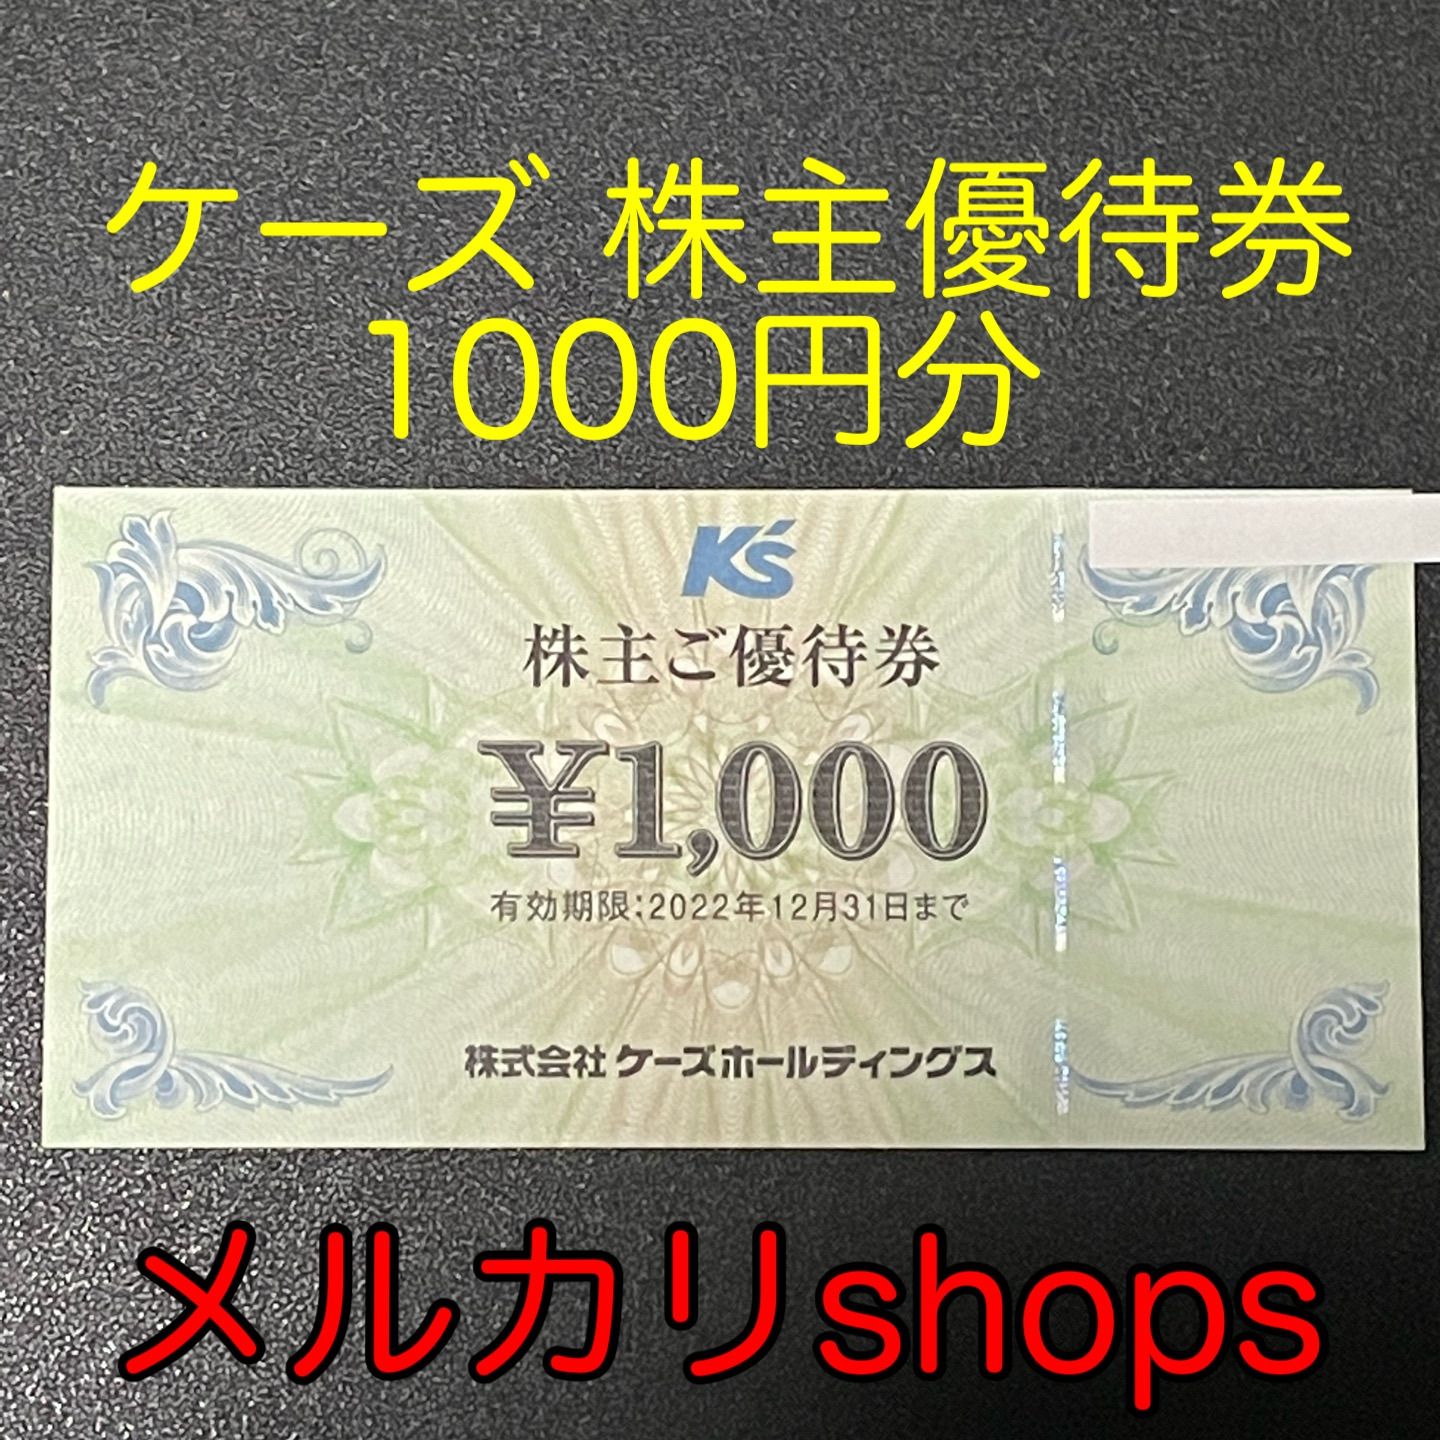 ケーズデンキ 株主優待券 6000円分 K's ケーズ 最新 - www.ecotours-of ...